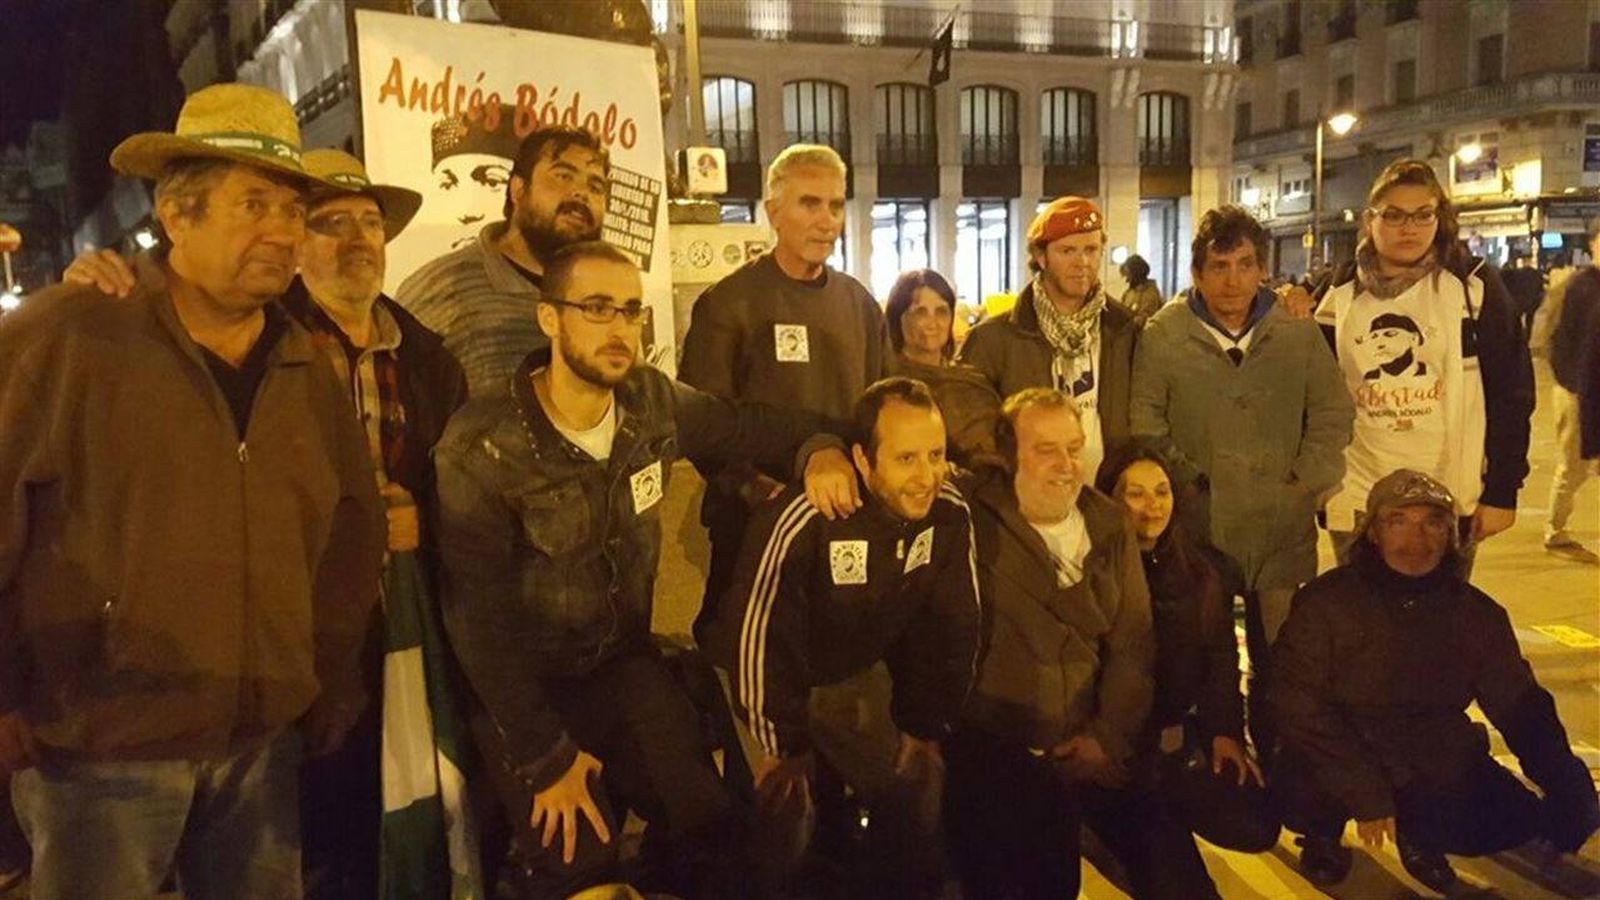 Foto: Diego Cañamero, arriba en el centro, junto a varios compañeros del Sindicato Andaluz de Trabajadores. (Twitter)